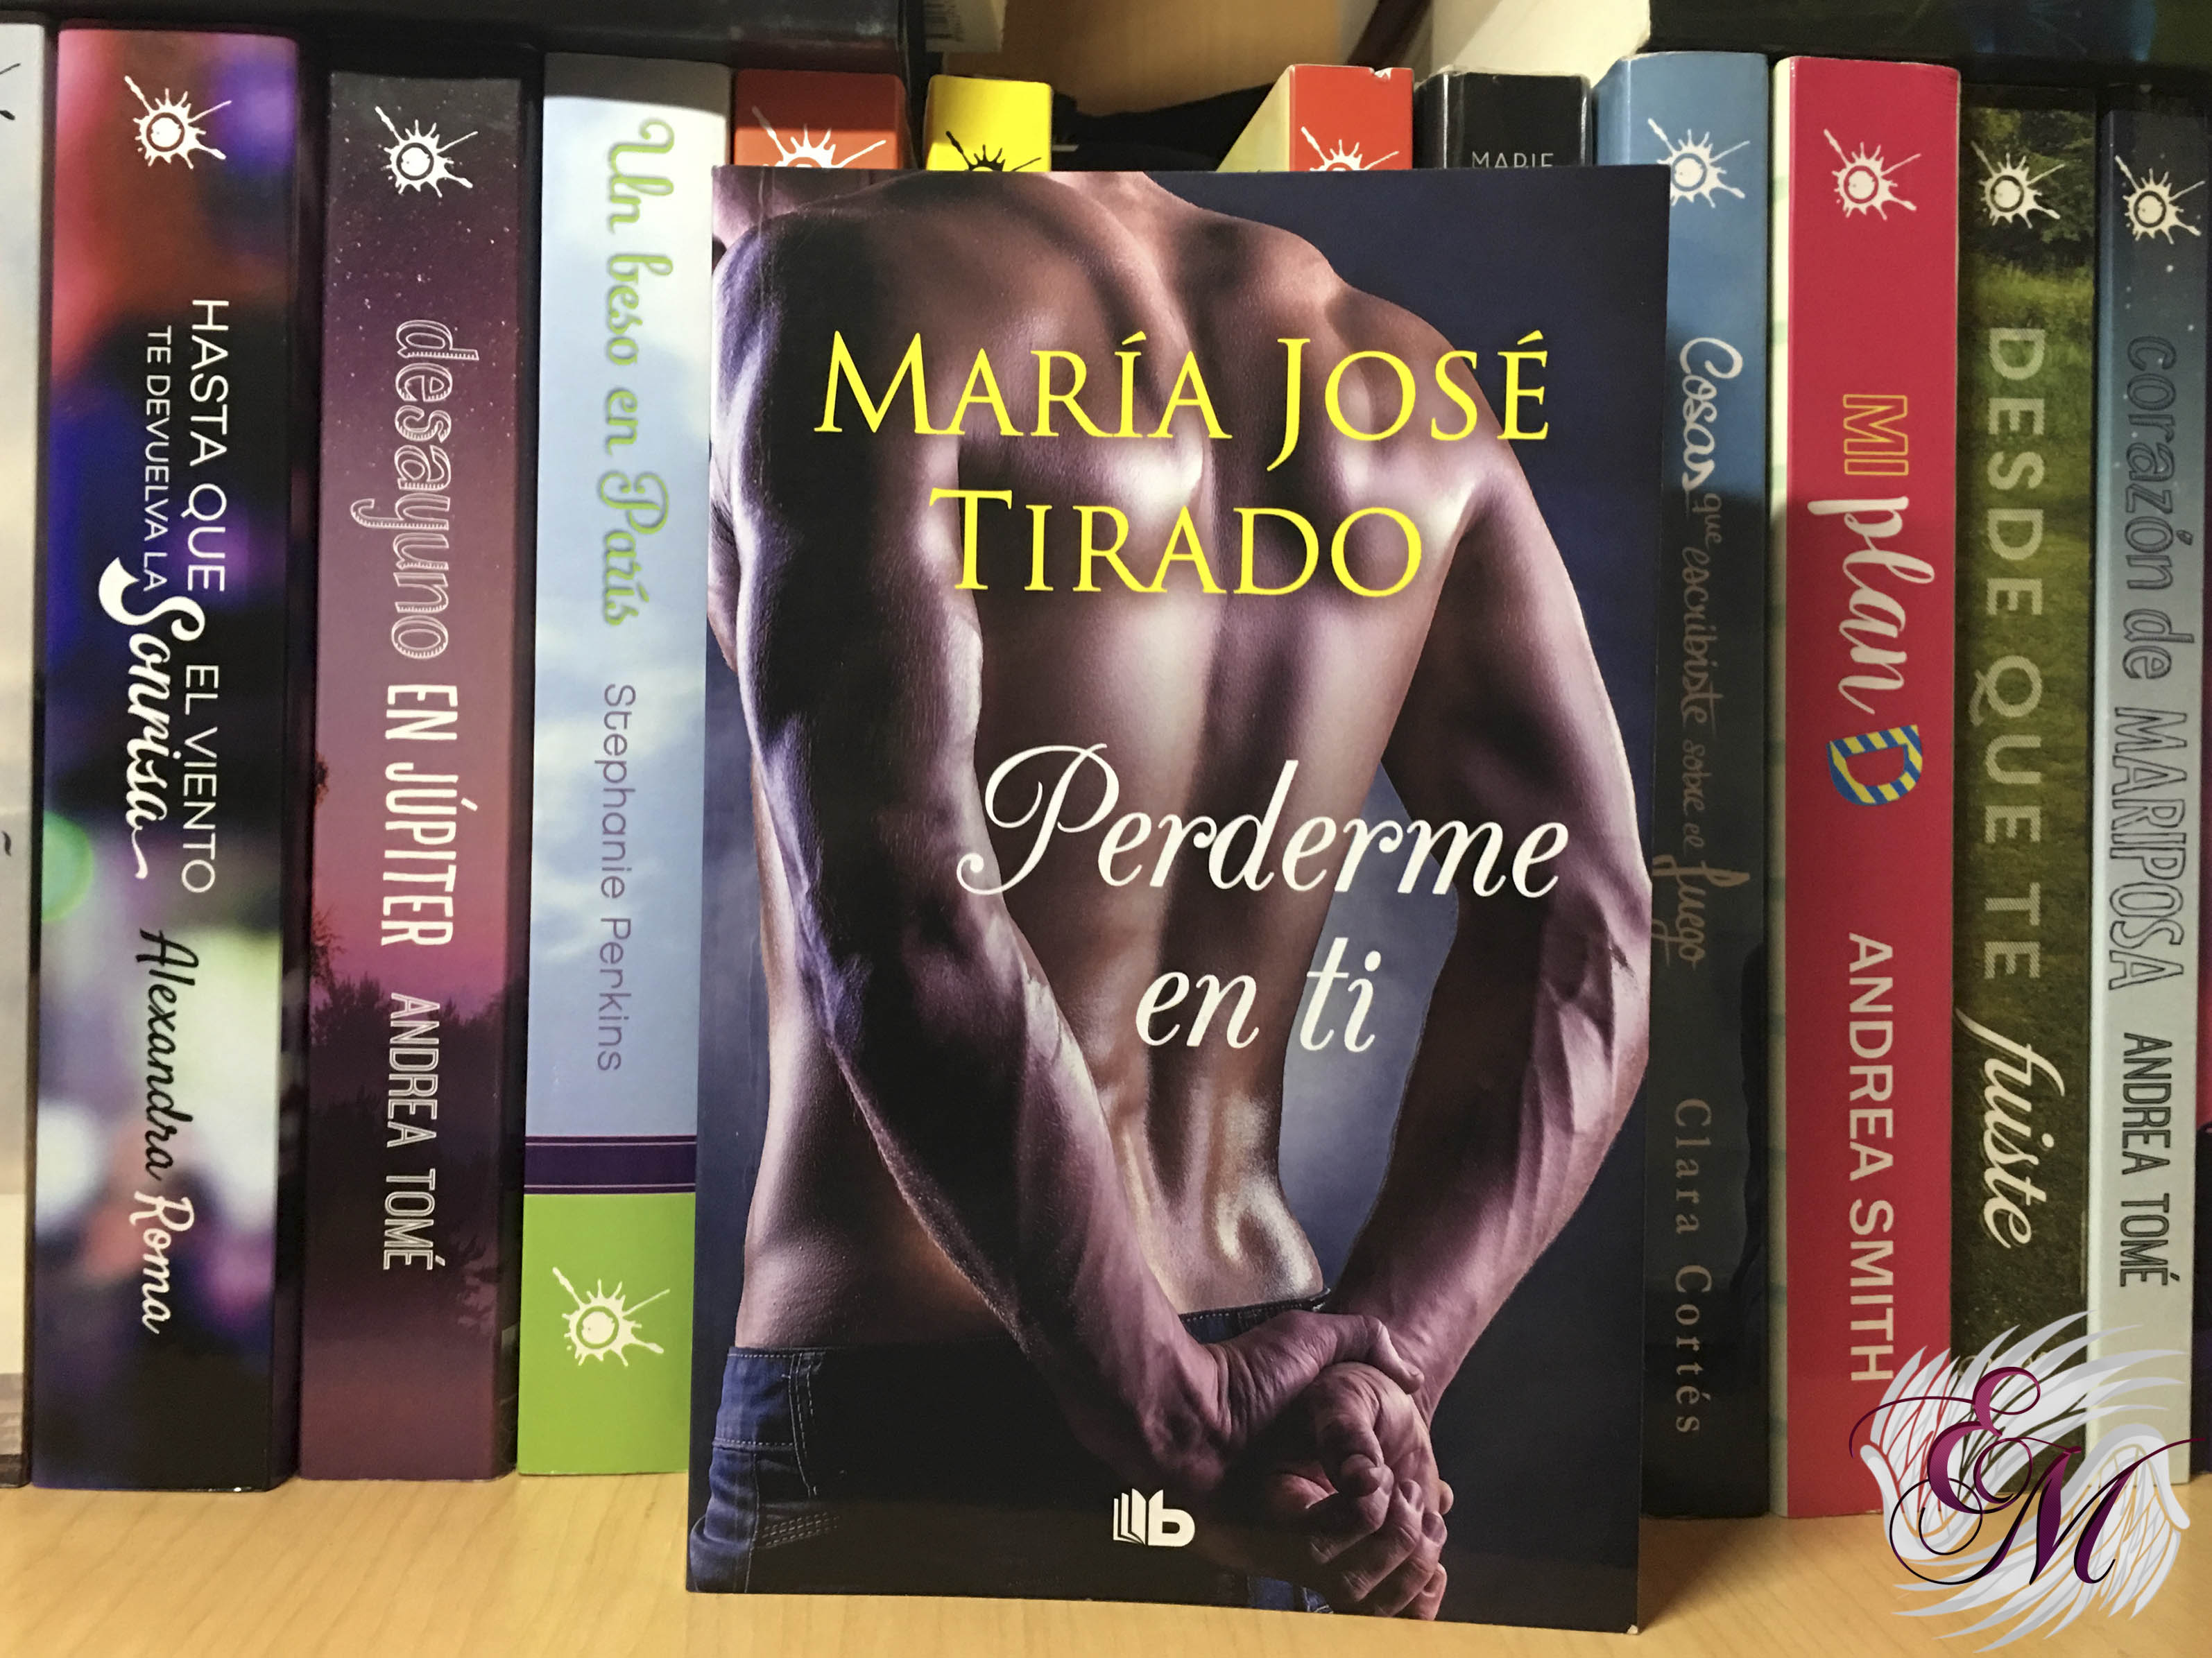 Perderme en ti, de María José Tirado - Reseña